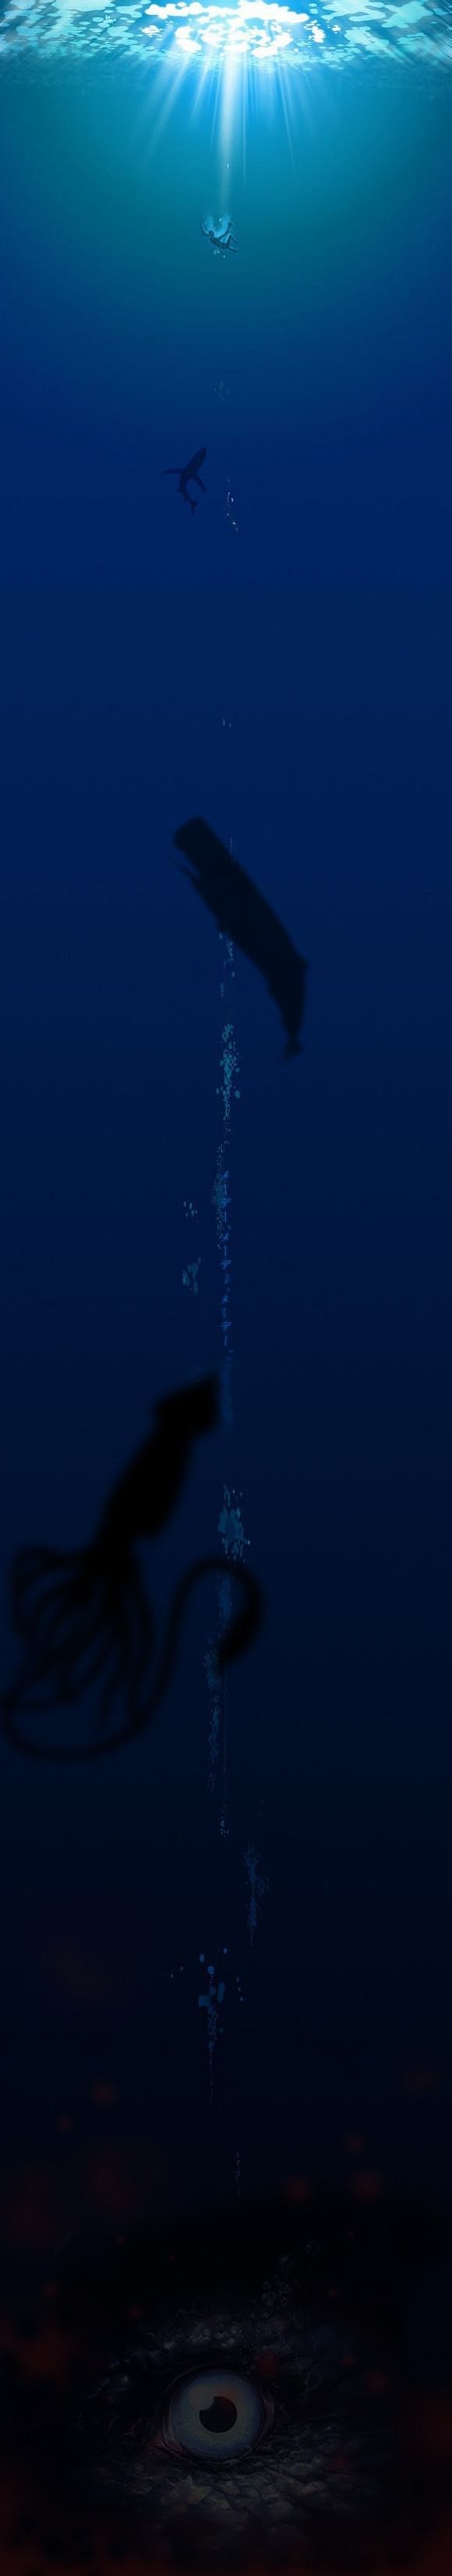 测试深海恐惧症的图片图片